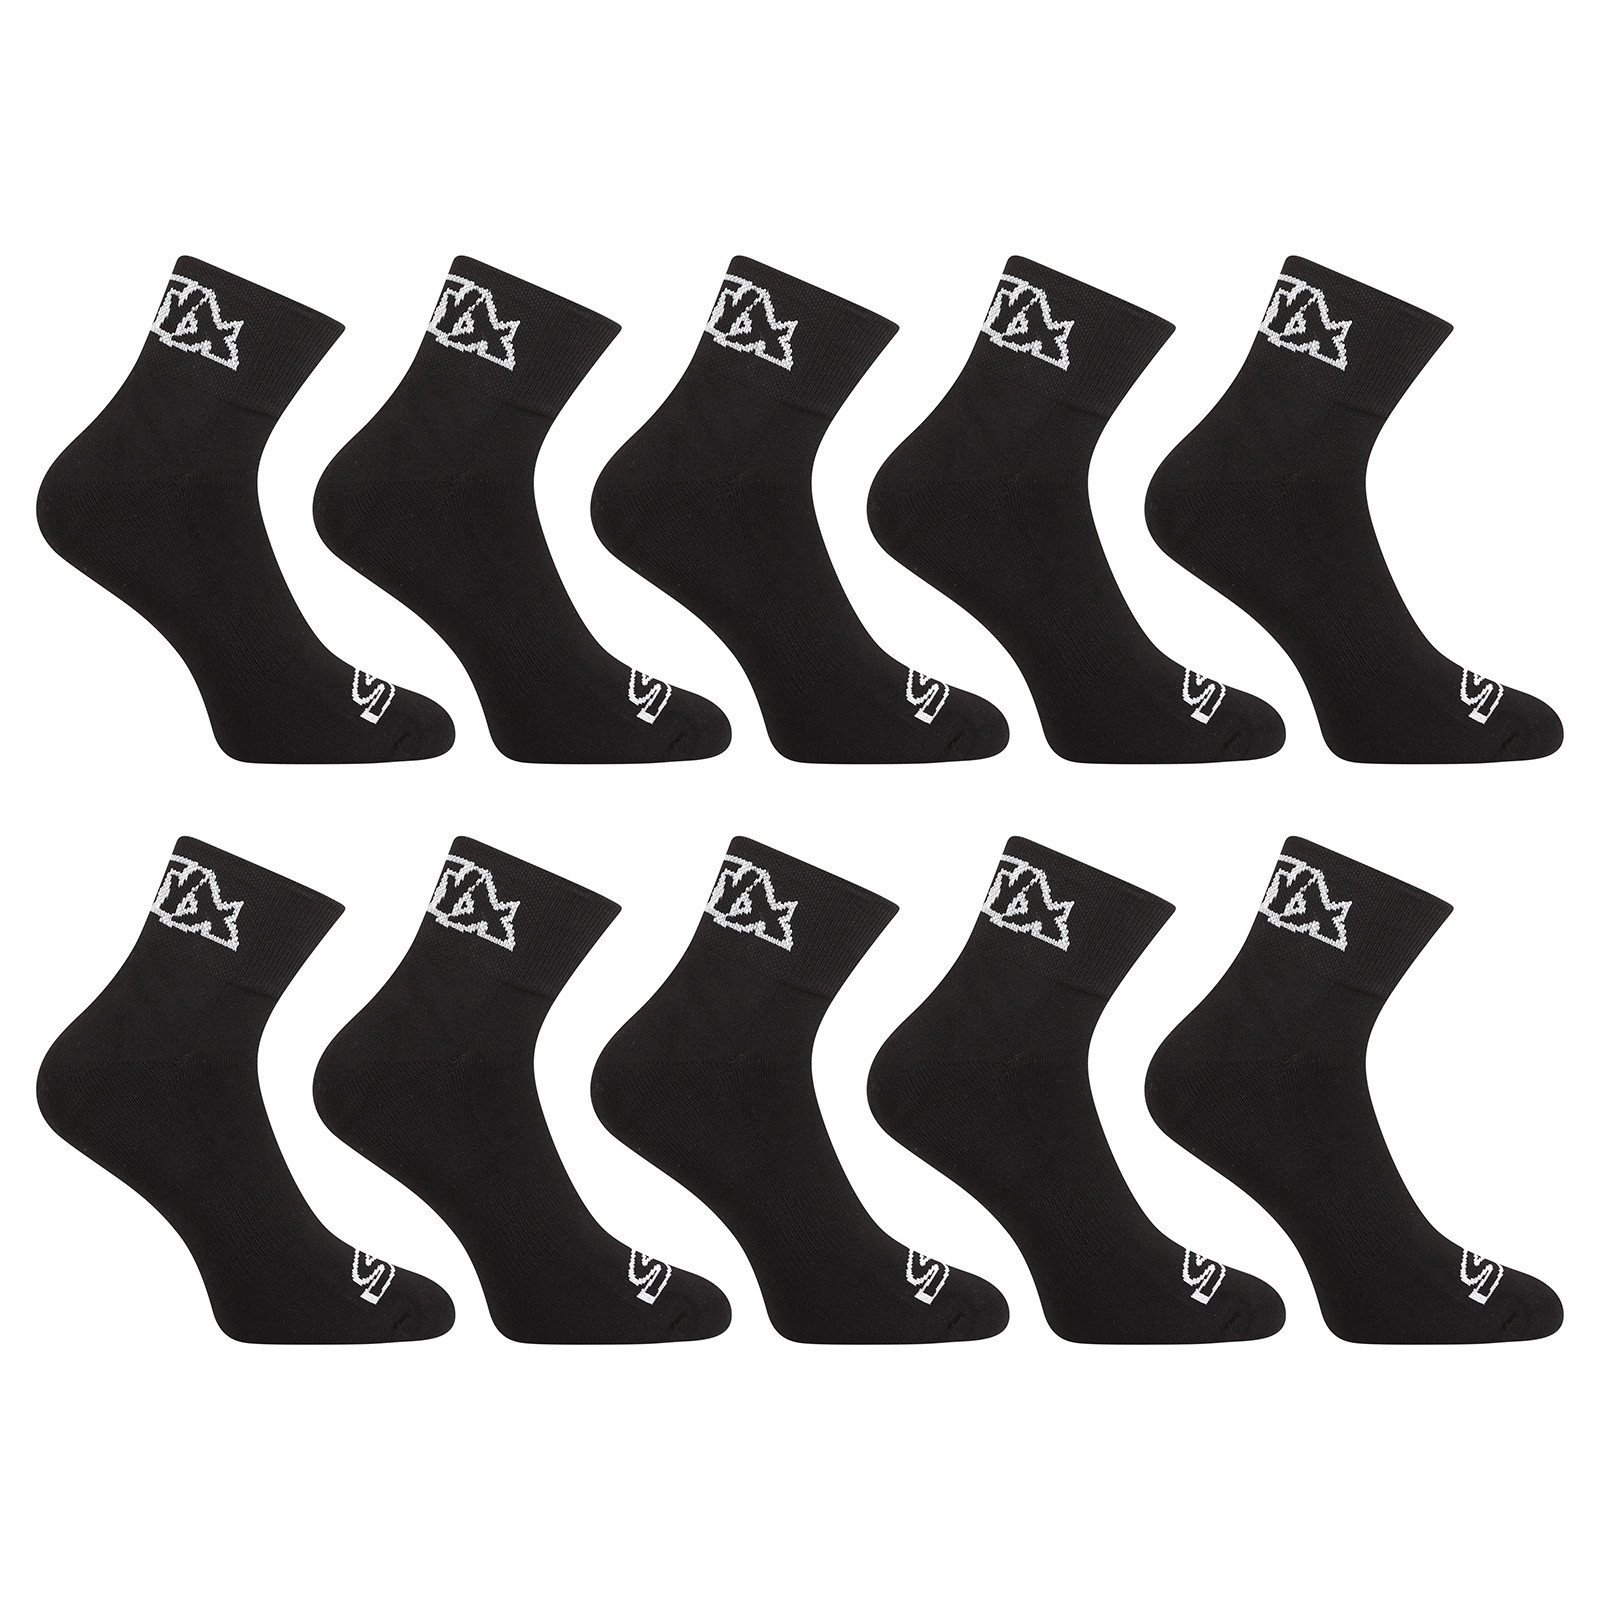 E-shop 10PACK ponožky Styx kotníkové černé